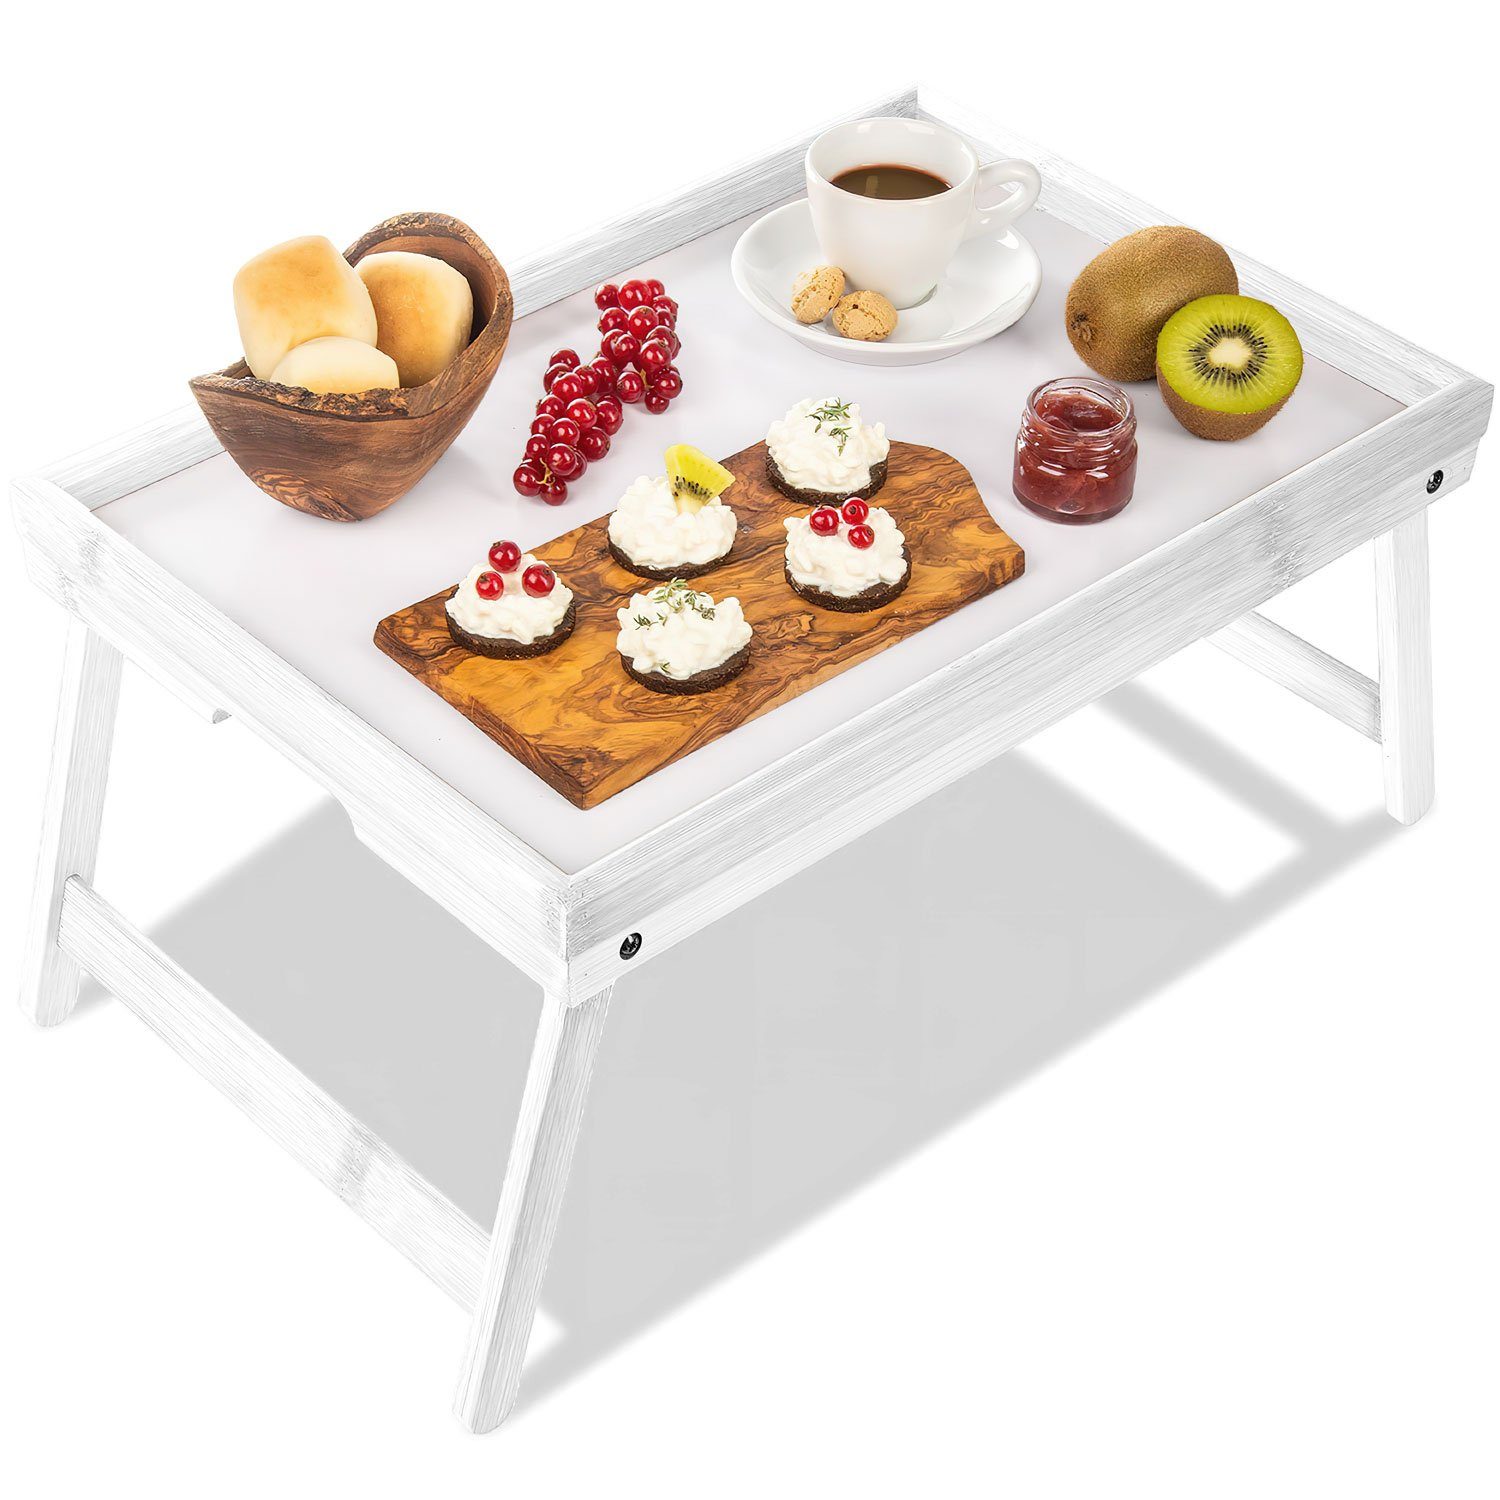 Betttisch Frühstückstablett Tabletttisch Serviertablett Bett-Tablett, Bambus Weiß Dimono